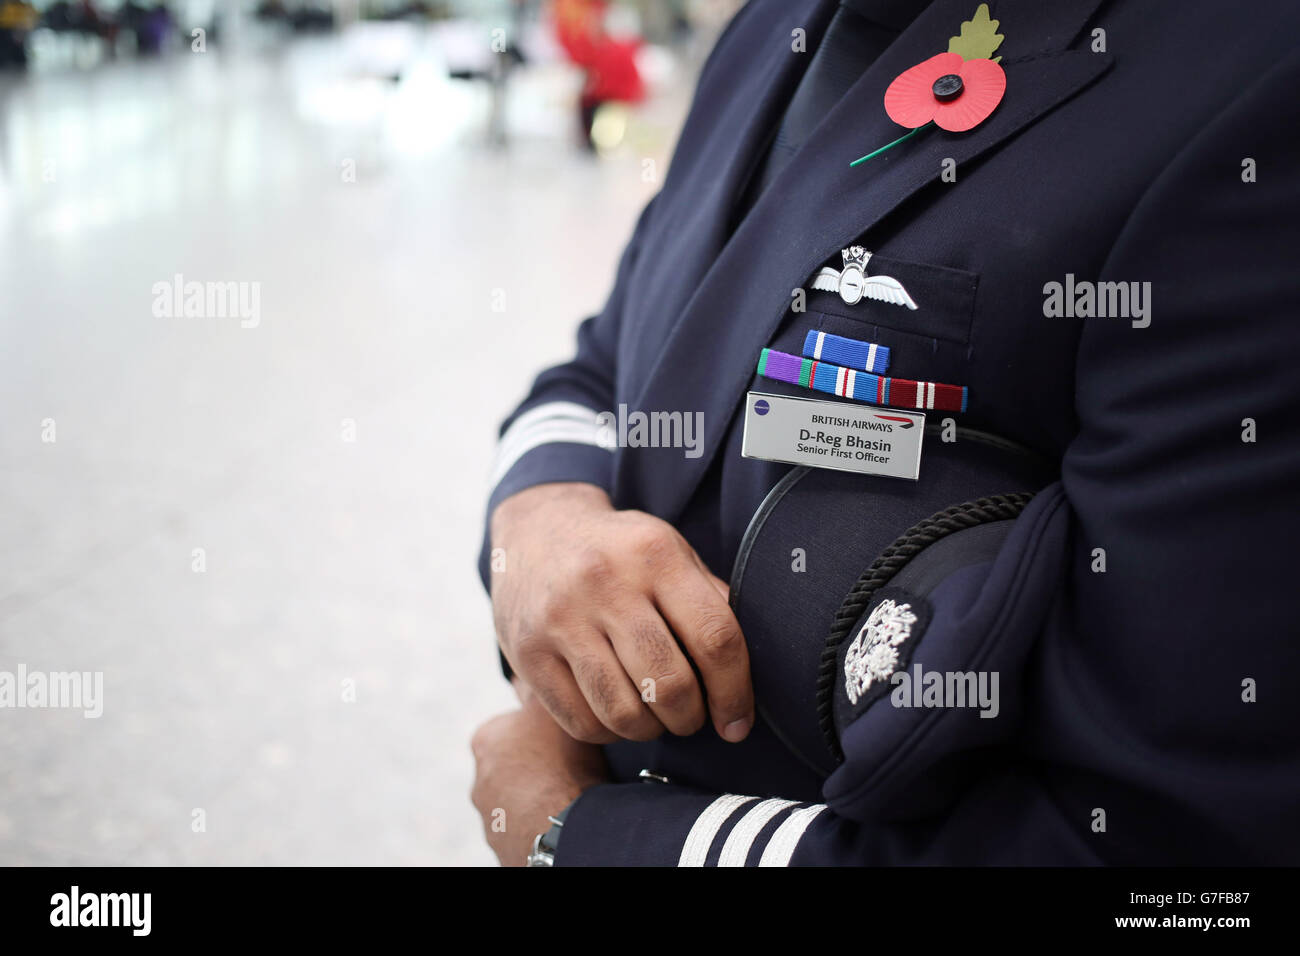 British Airways 787 primo ufficiale senior Dhaeraj Bhasin indossa onorificenze militari per i servizi per la NATO nell'ex Jugoslavia e Medaglia generale di servizio per le operazioni aeree in Iraq dopo aver partecipato ai due minuti di silenzio per il giorno dell'armistizio. Foto Stock